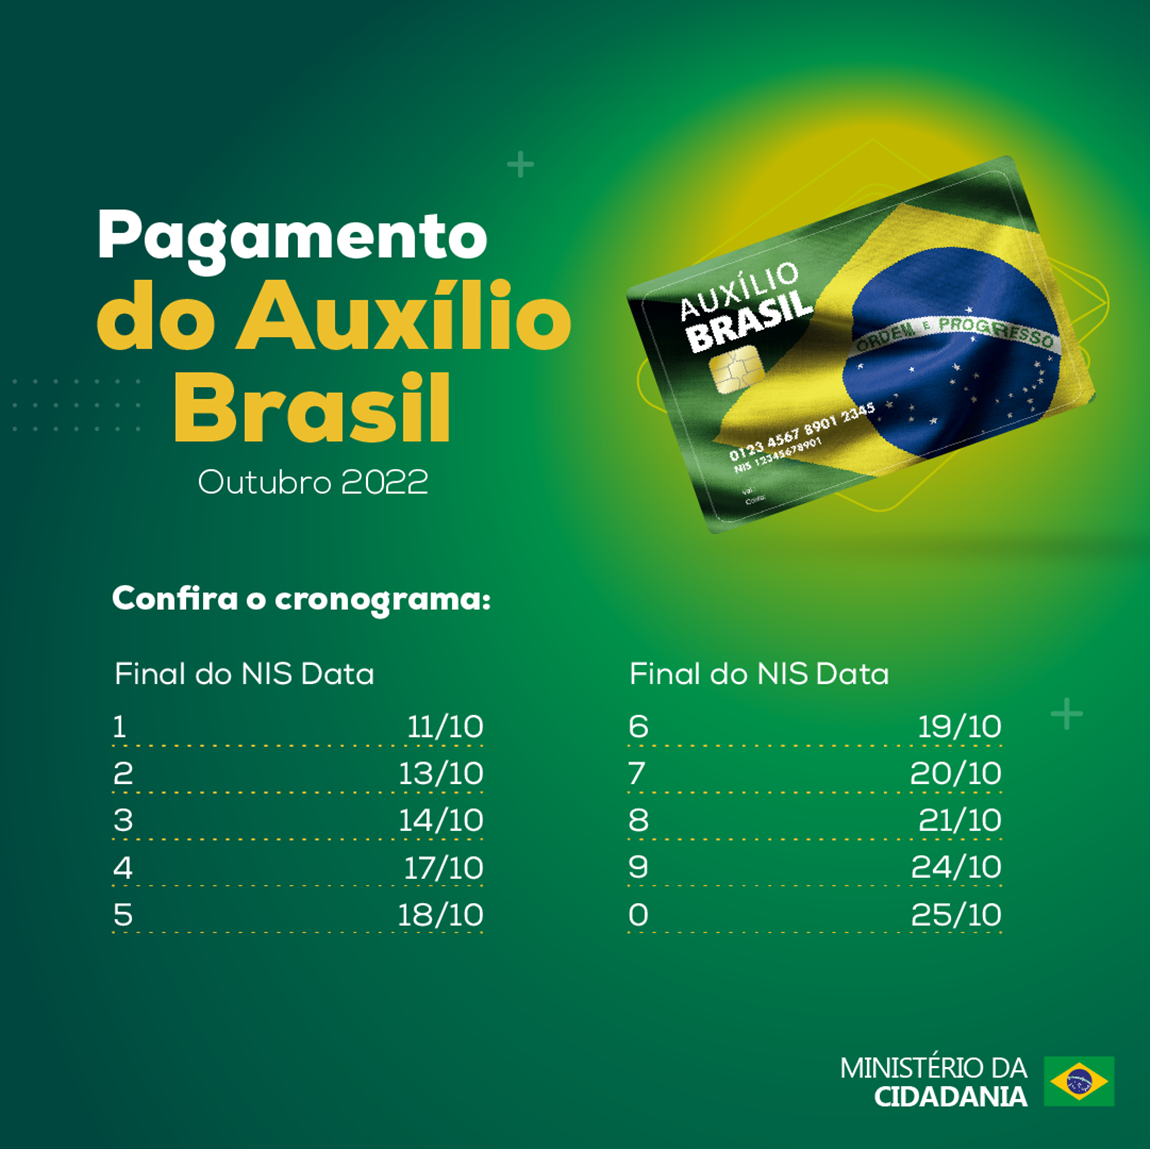 Auxílio Brasil: veja calendário de pagamento mês a mês